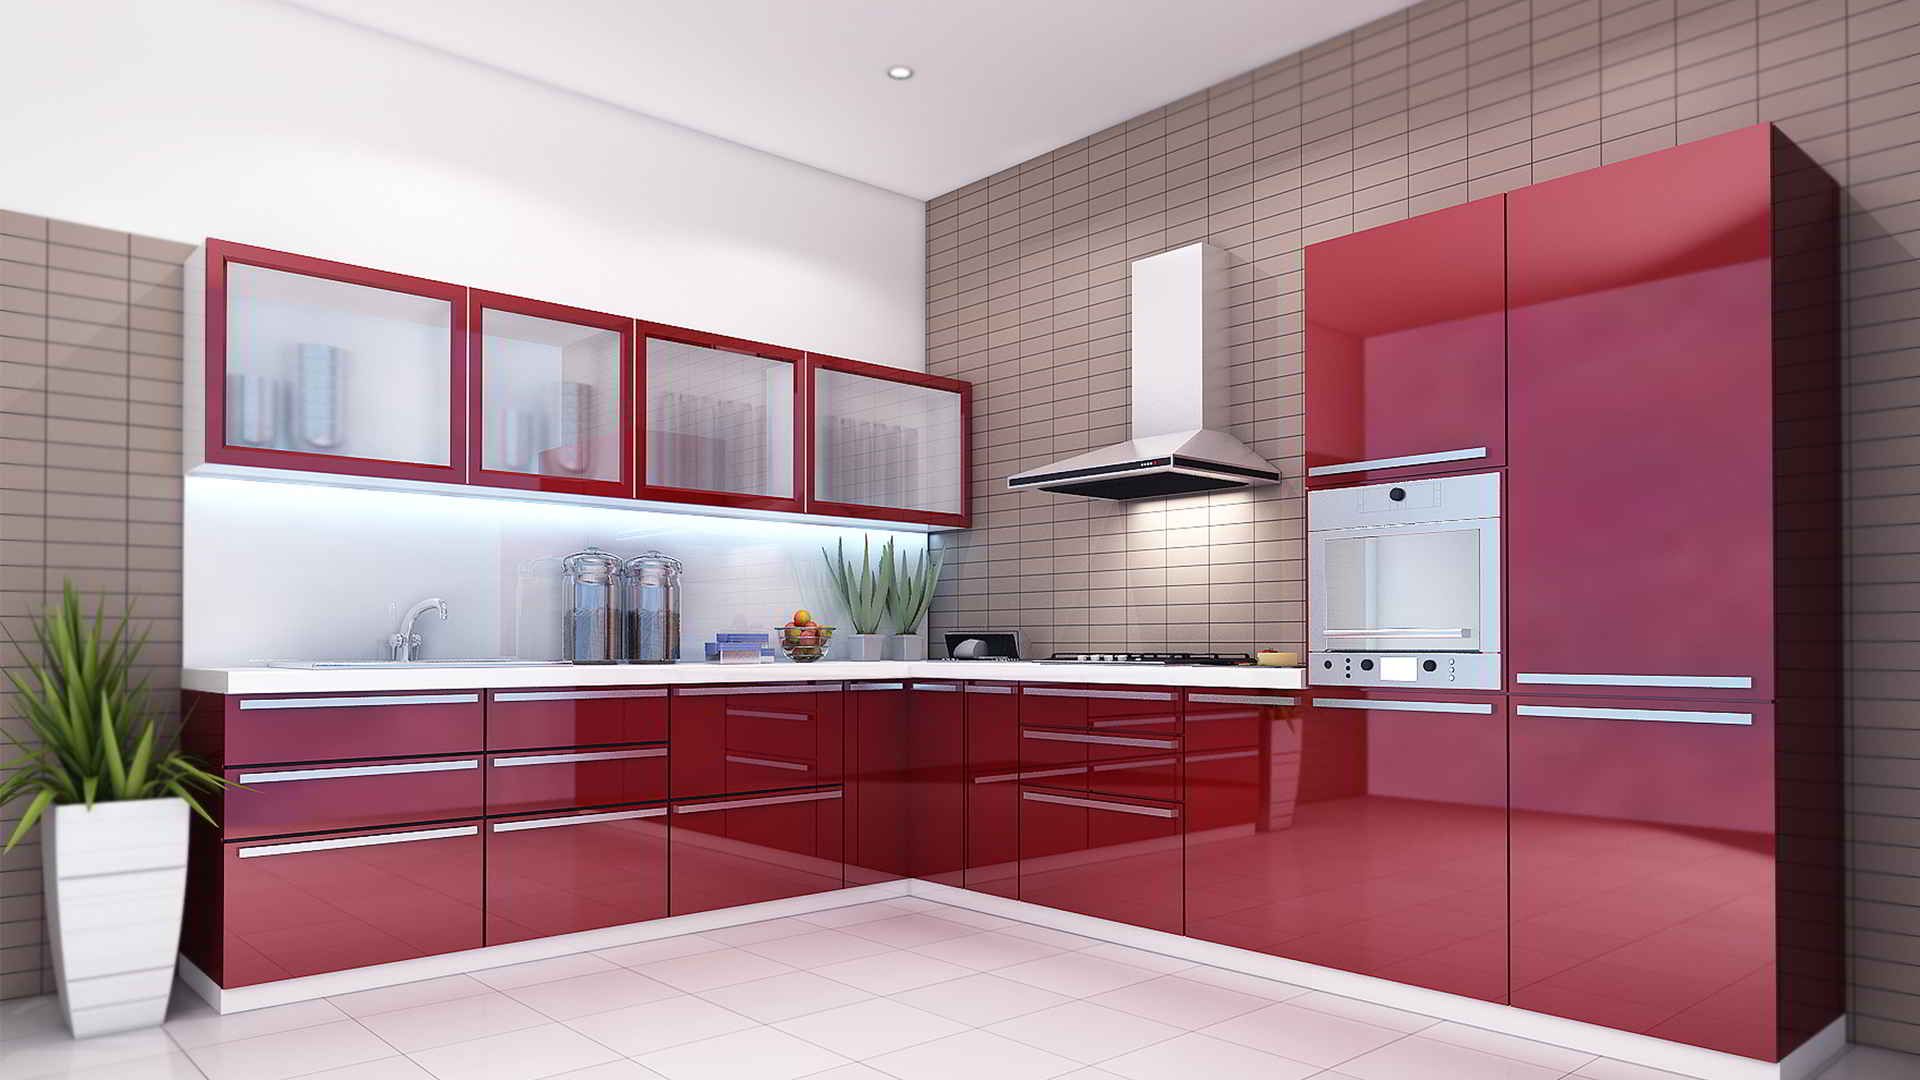 Popular Modular Kitchen Design Ideas